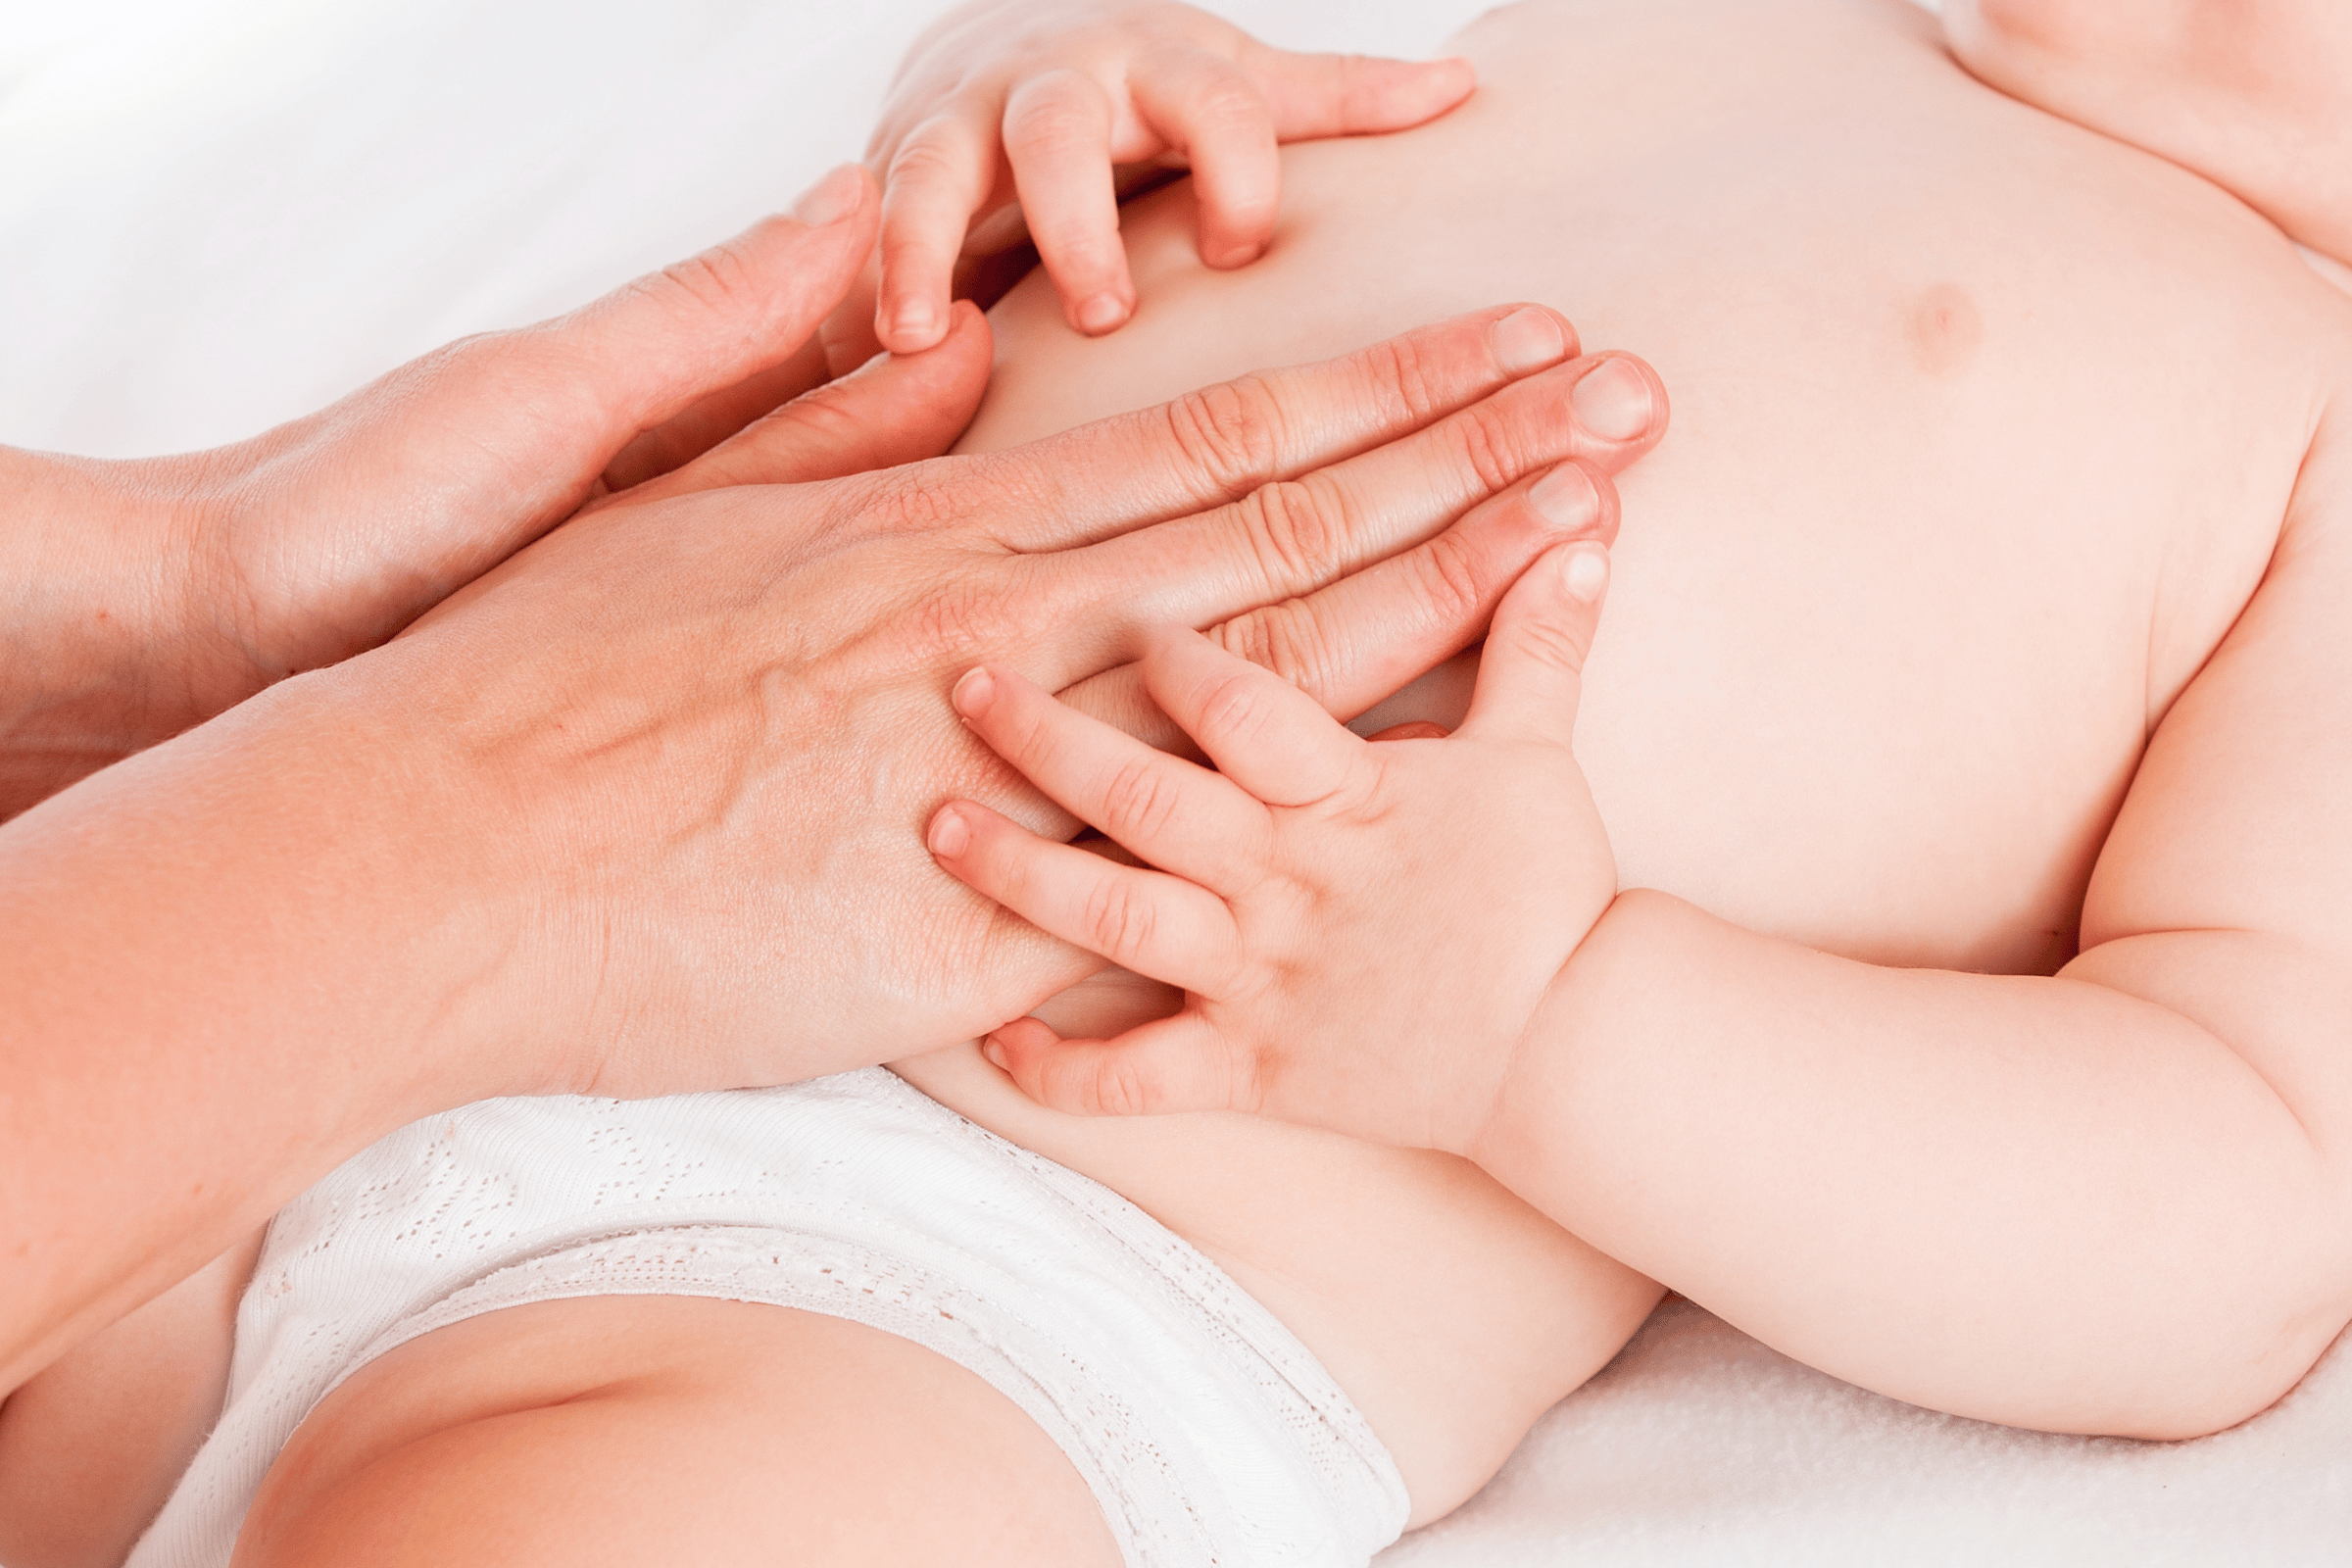 8 astuces pour soulager les coliques de votre bébé – Maman Zen